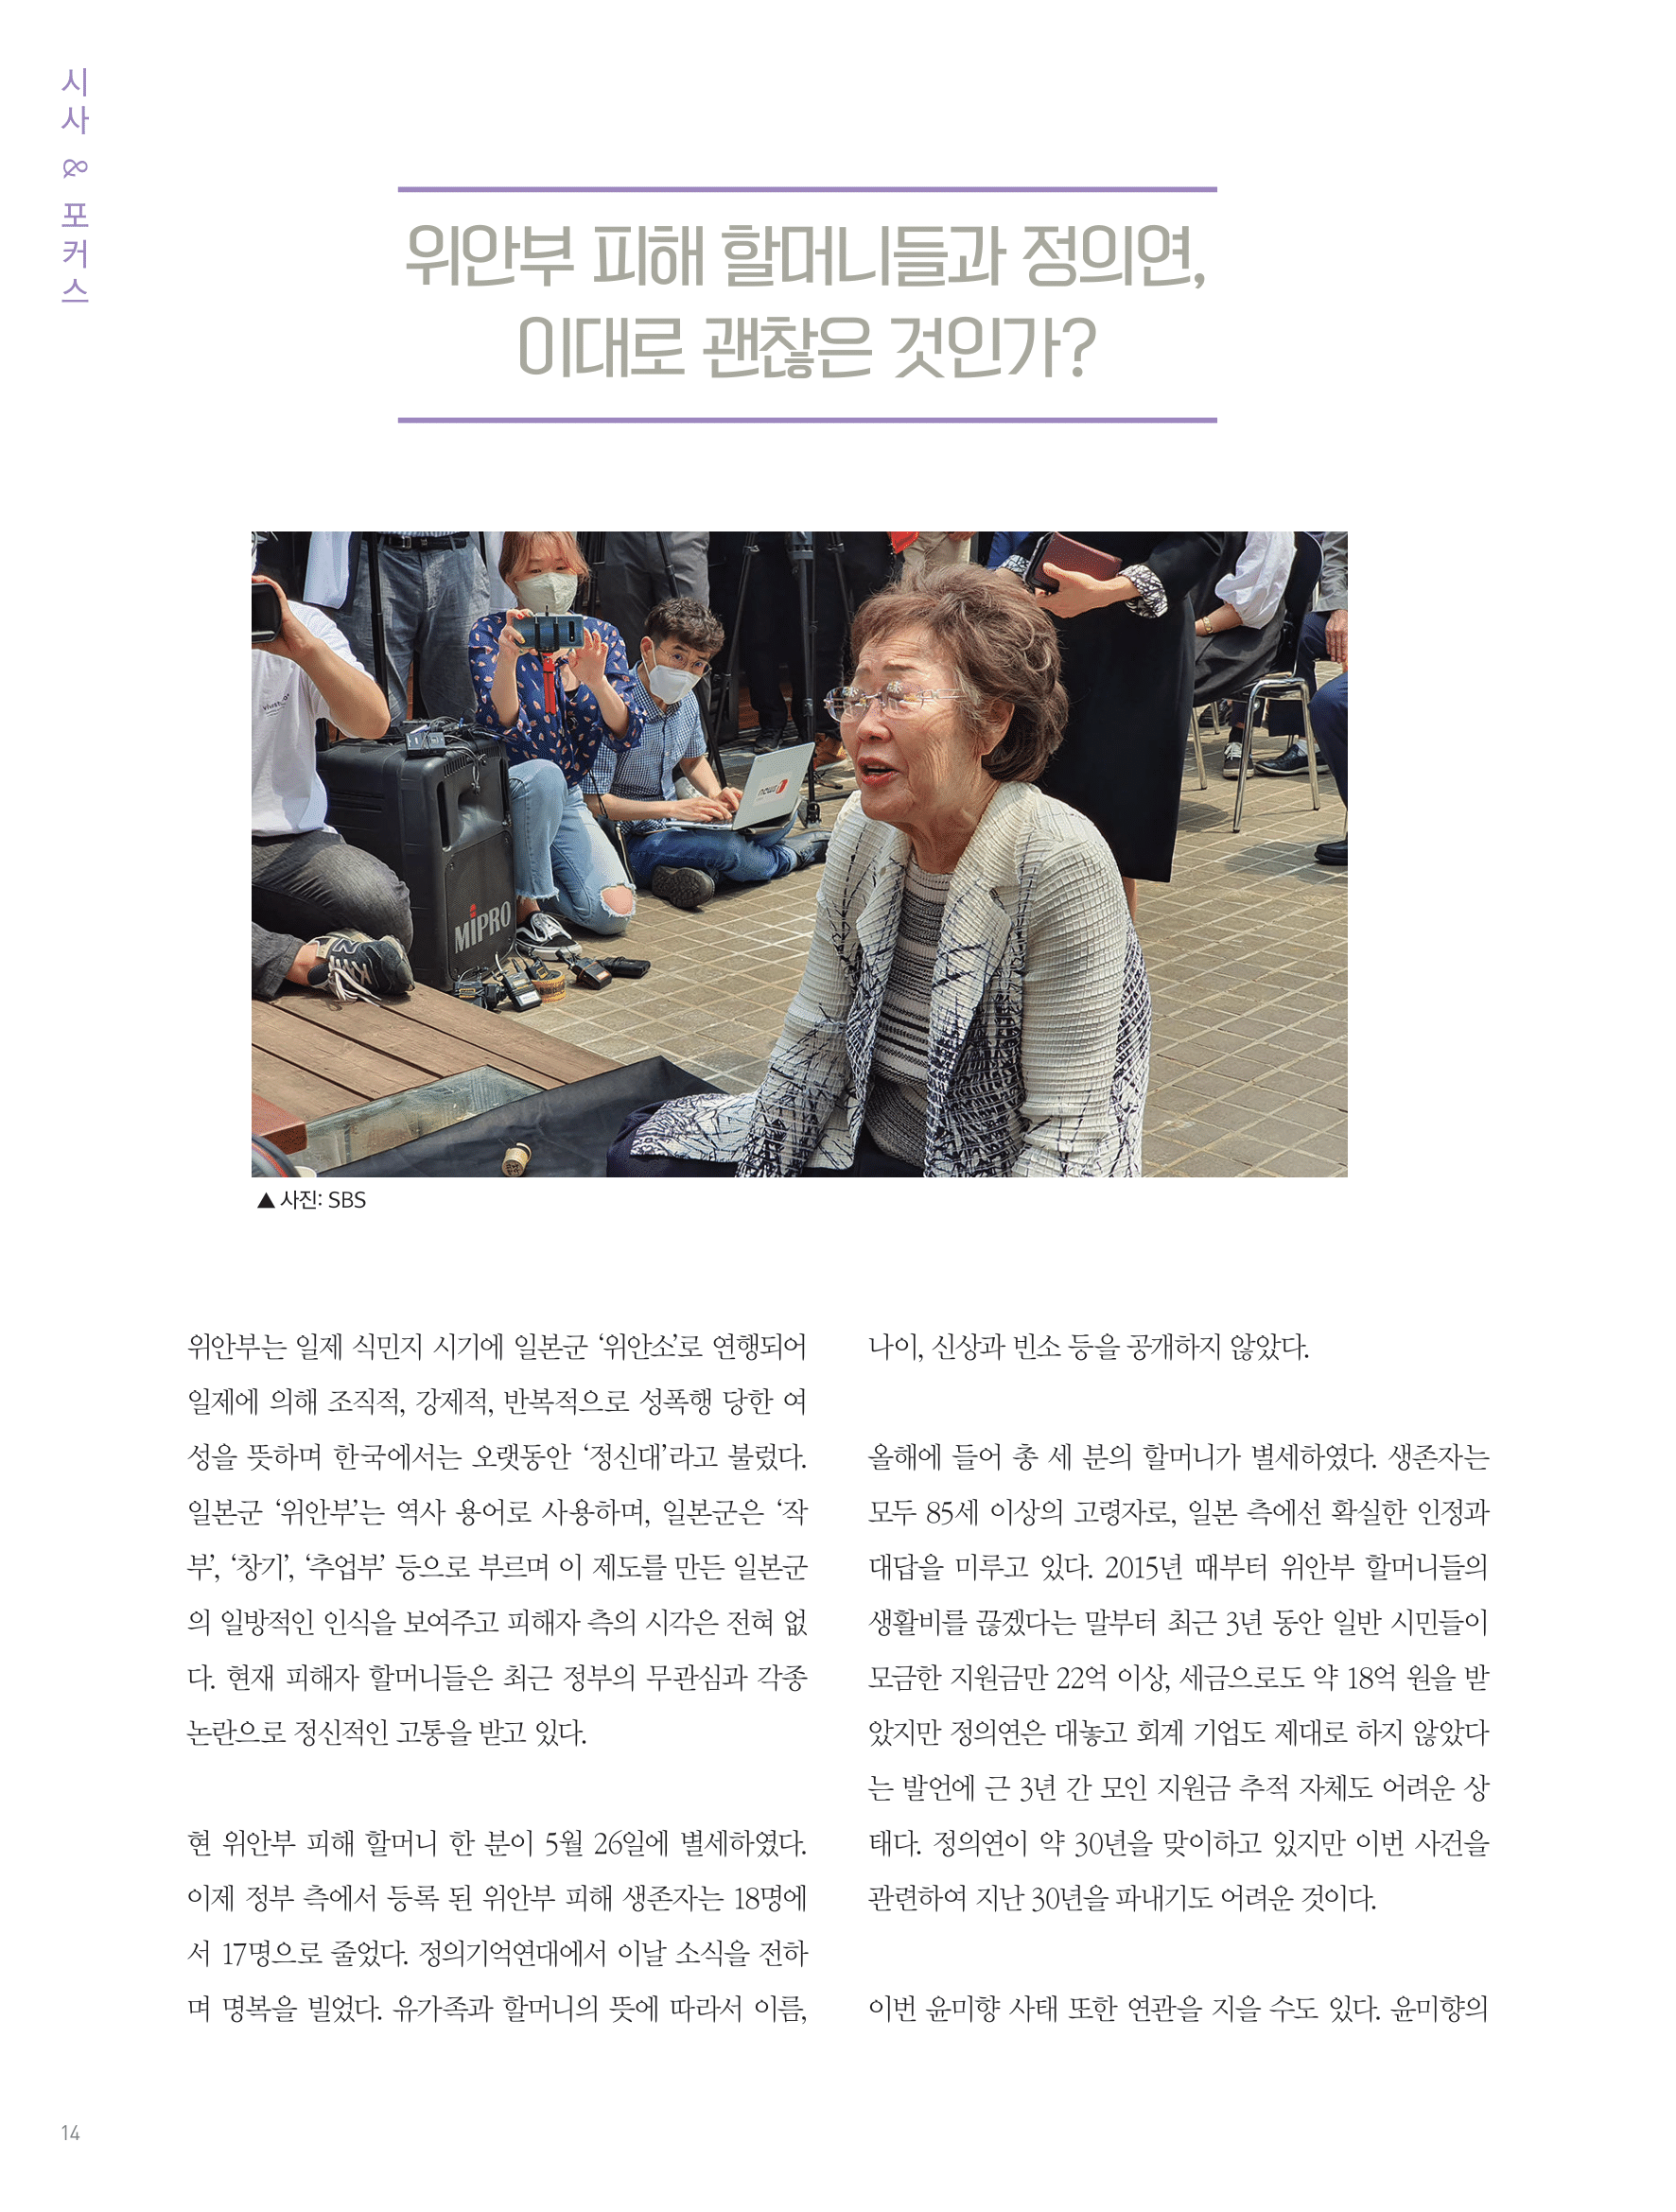 뜻새김 신문 75호 12